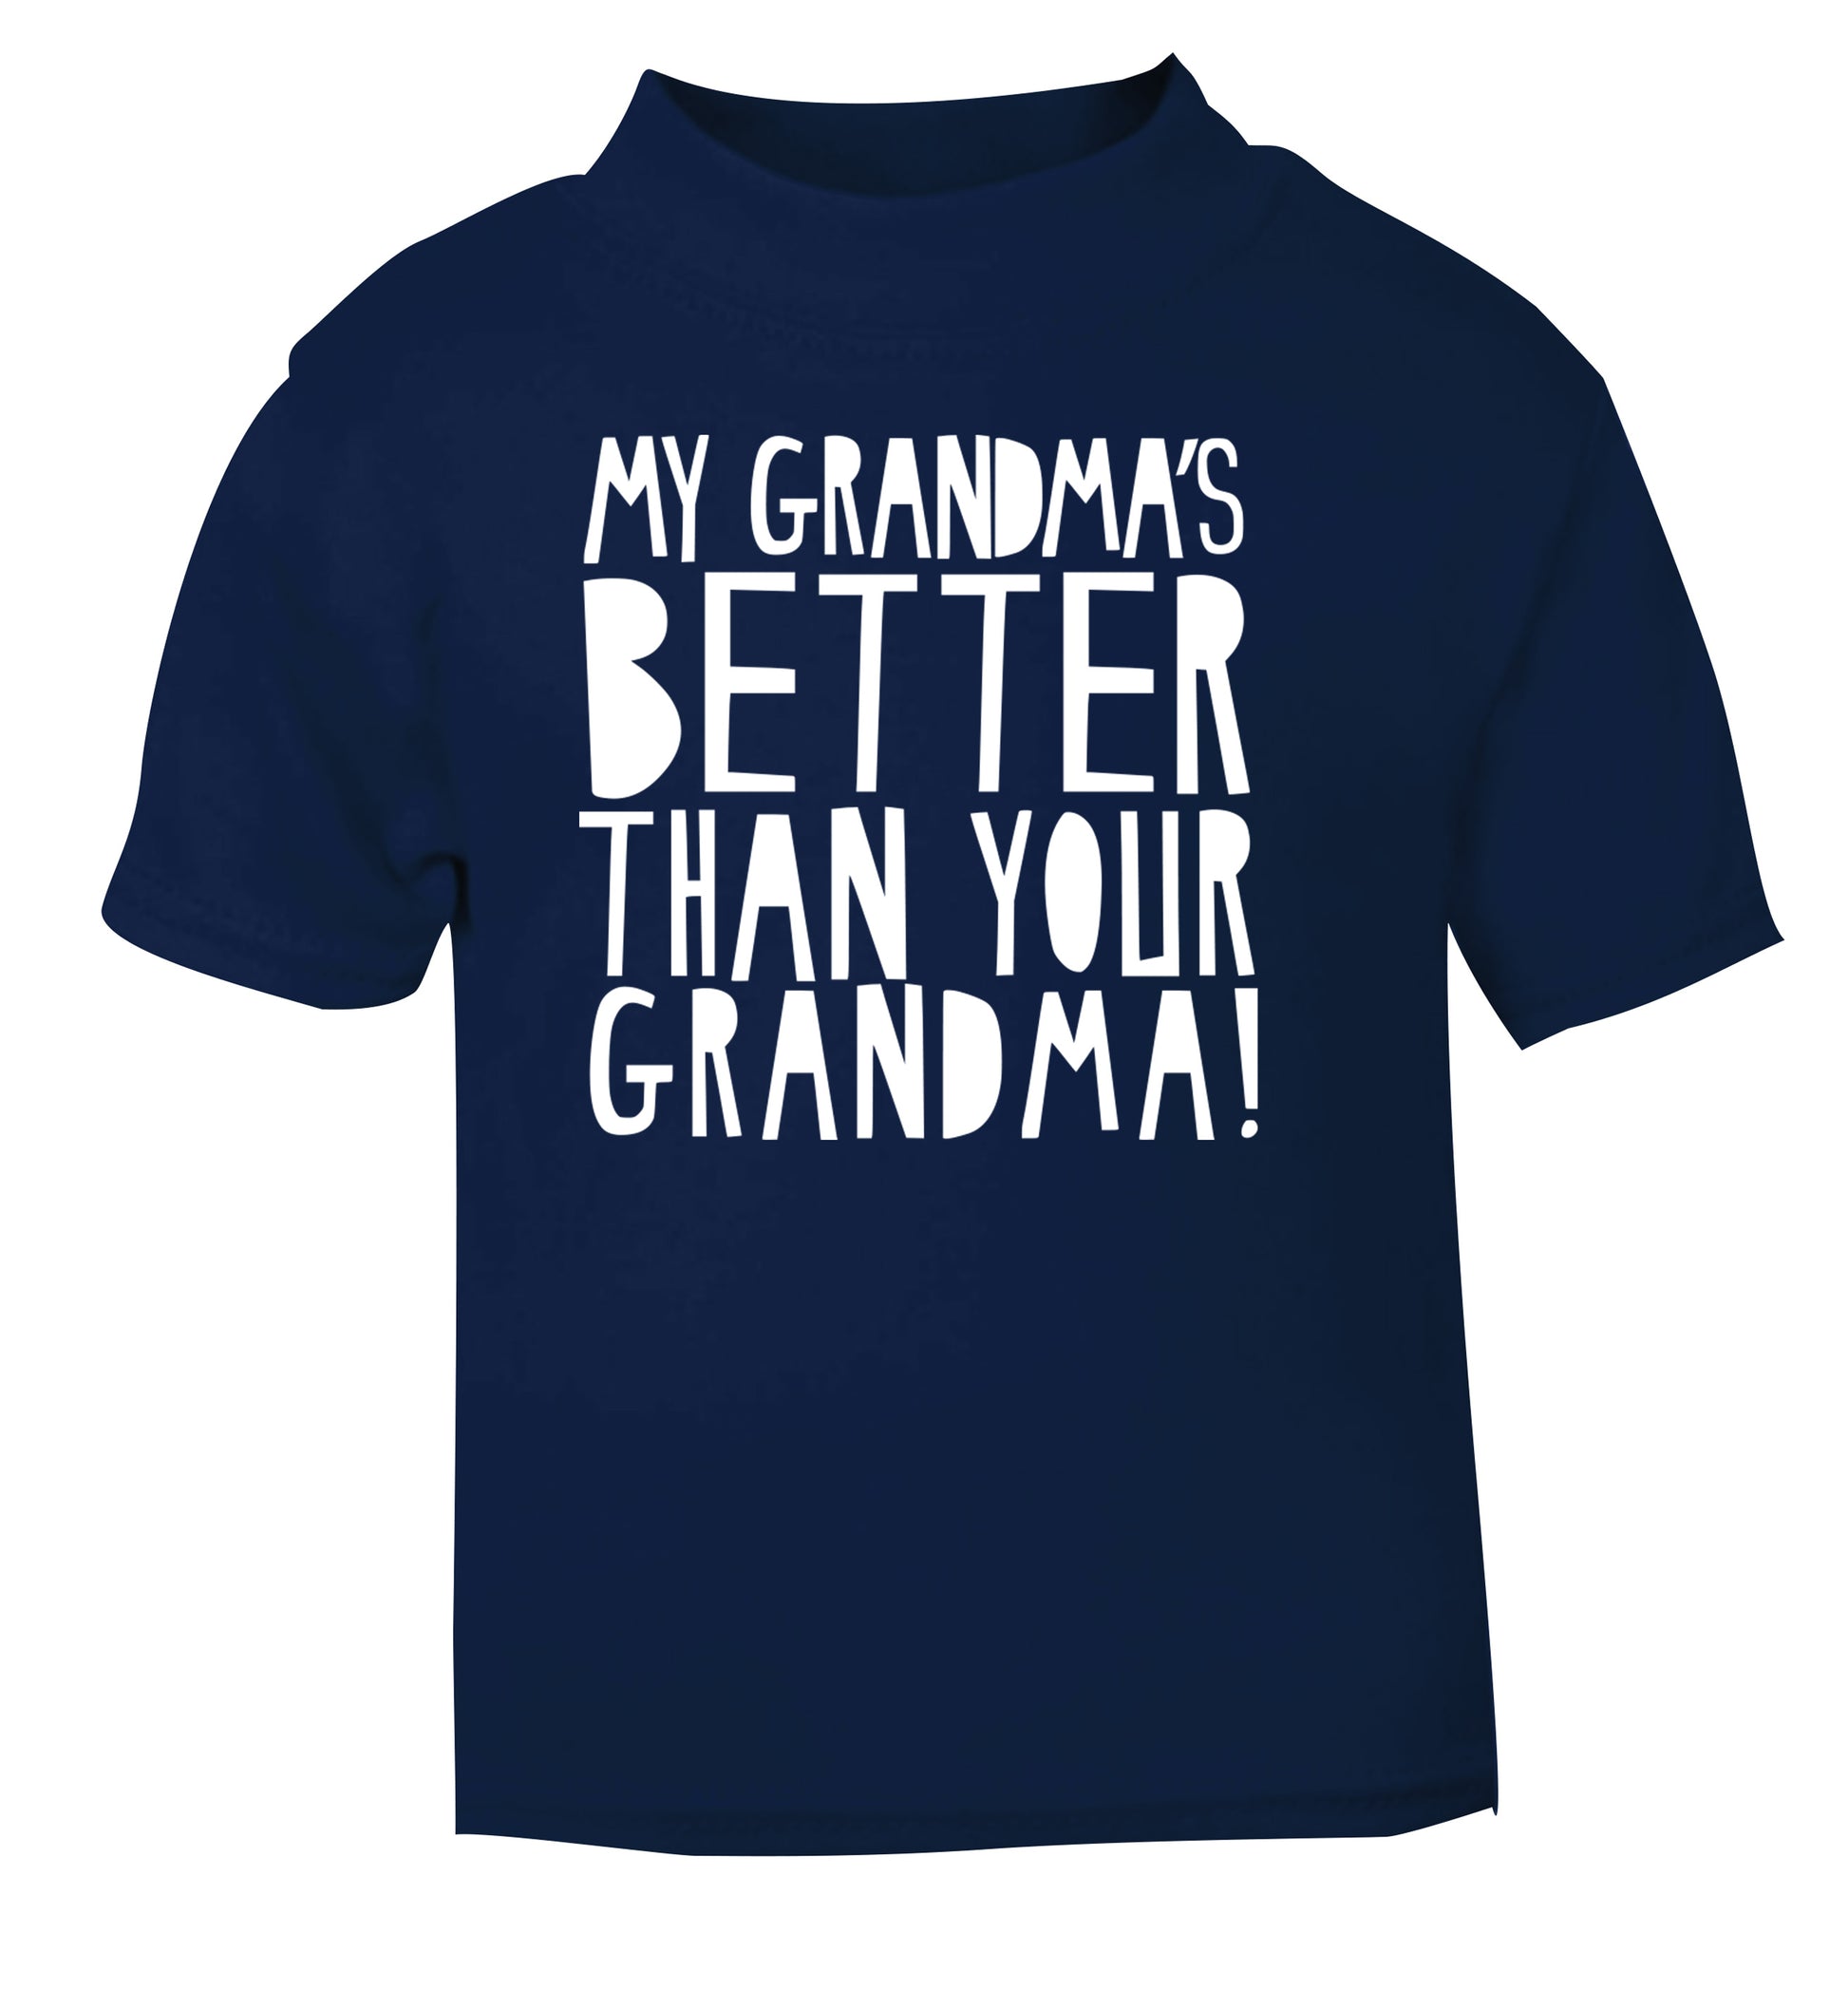 My grandma's better than your grandma navy Baby Toddler Tshirt 2 Years